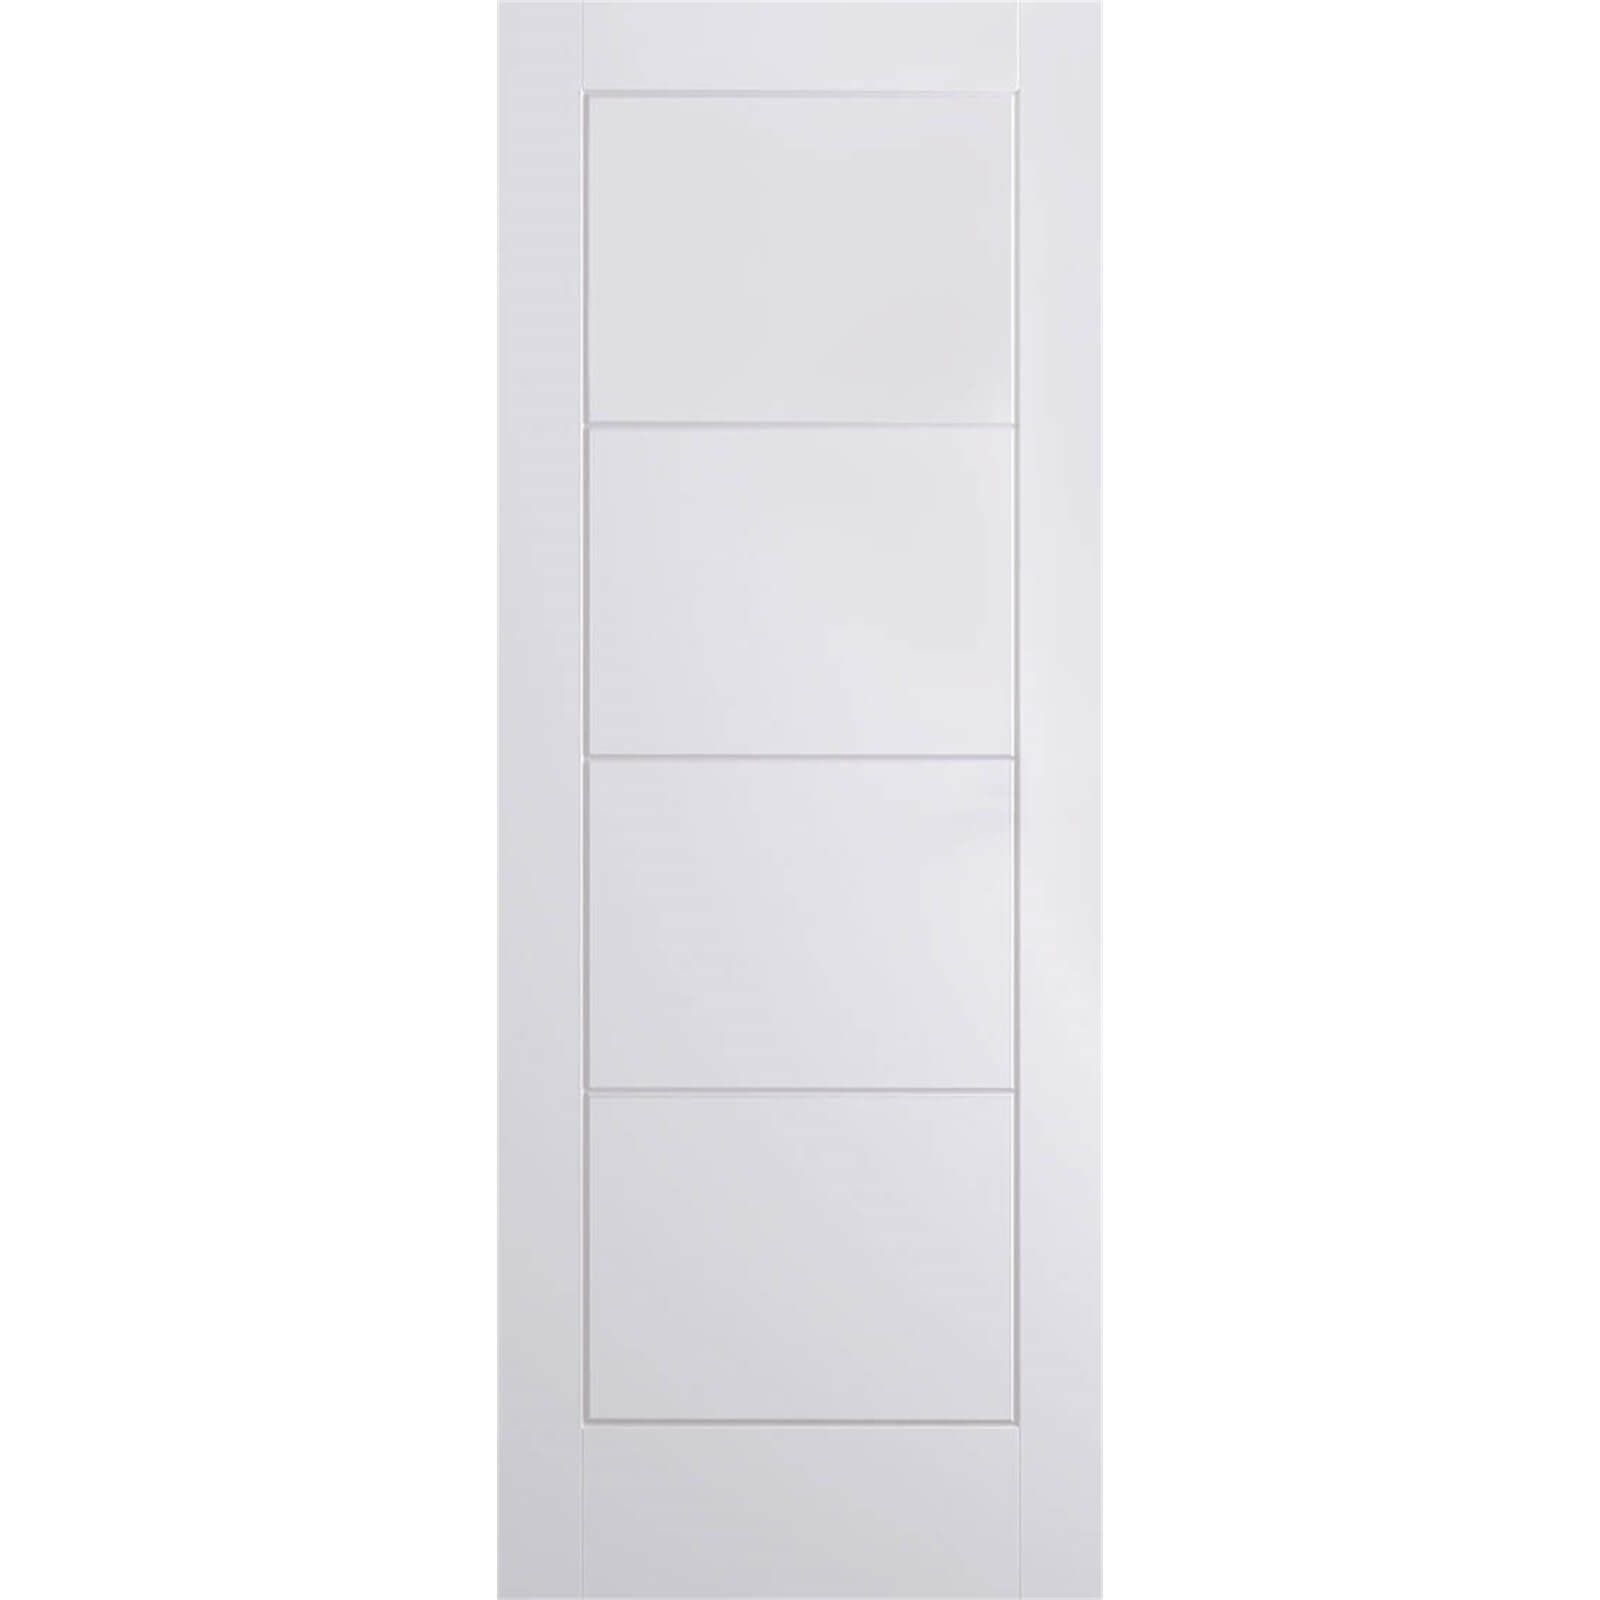 Ladder Internal Primed White 4 Panel Door - 686 x 1981mm